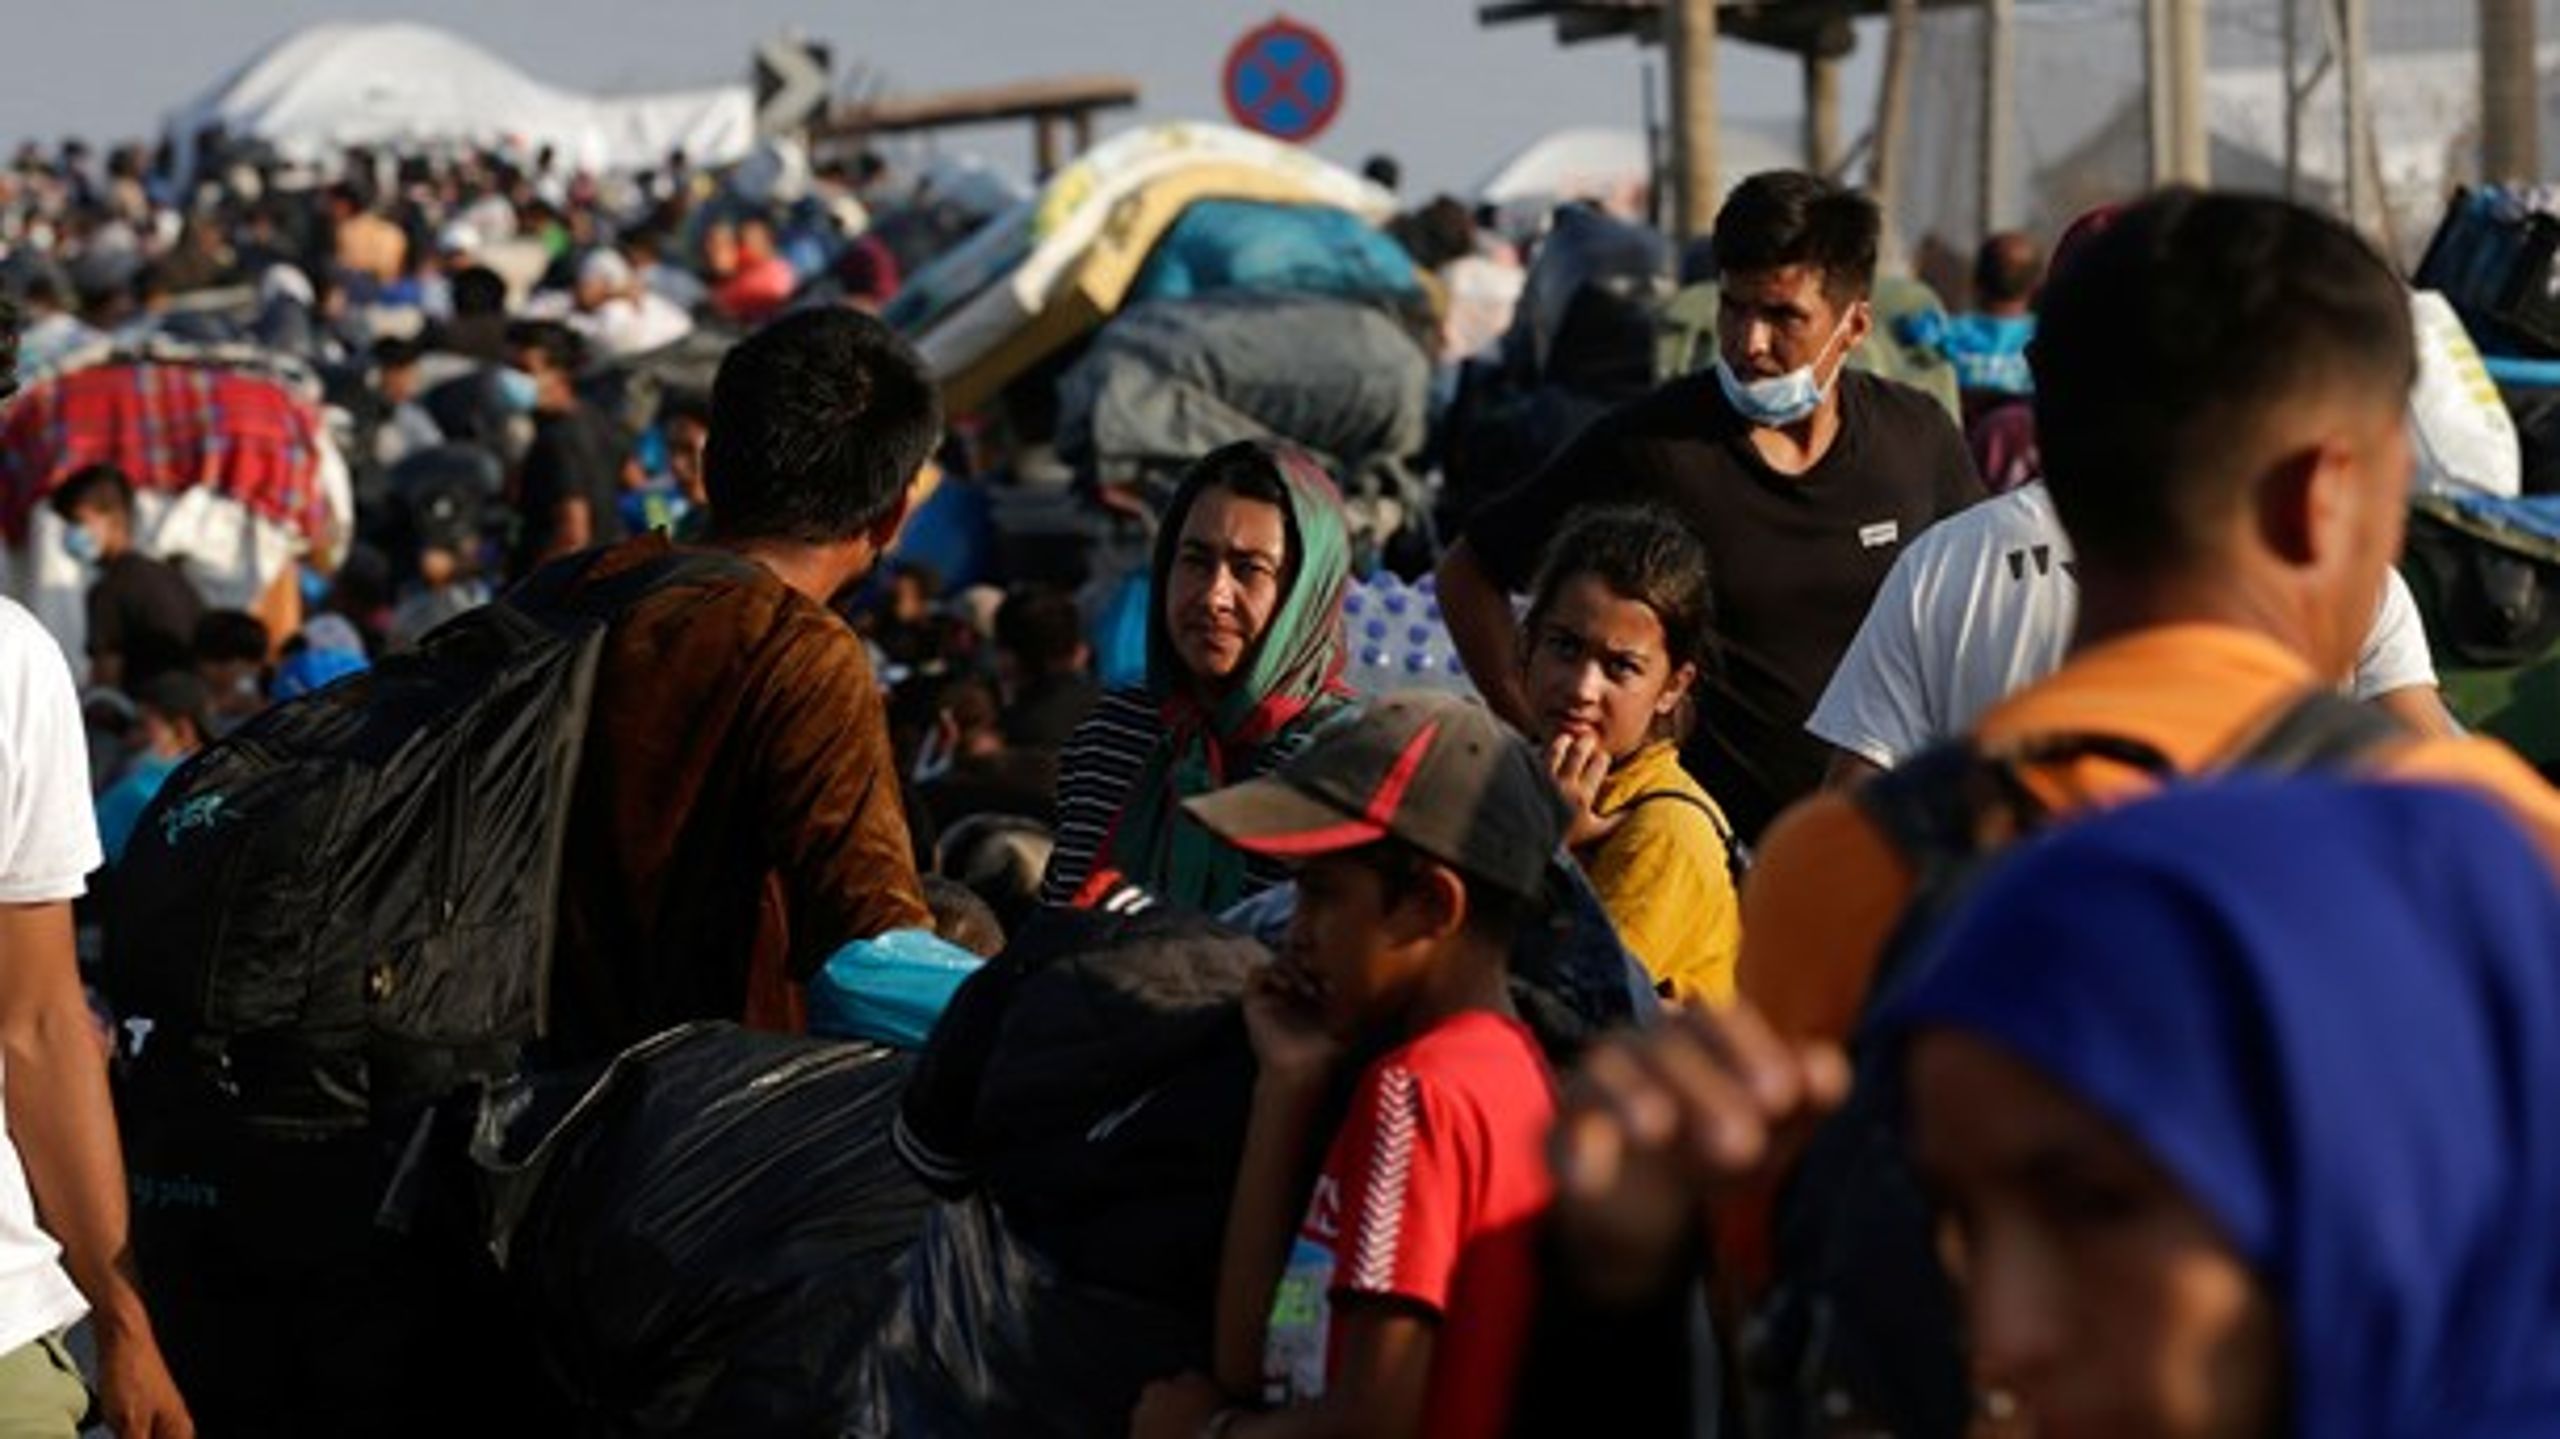 Efter den overfyldte Moria-flygtningelejr
på Lesbos er brændt ned til grunden, har EU-Kommissionen fremskyndet
fremlæggelsen af sit forslag til en ny europæisk asylpolitik.